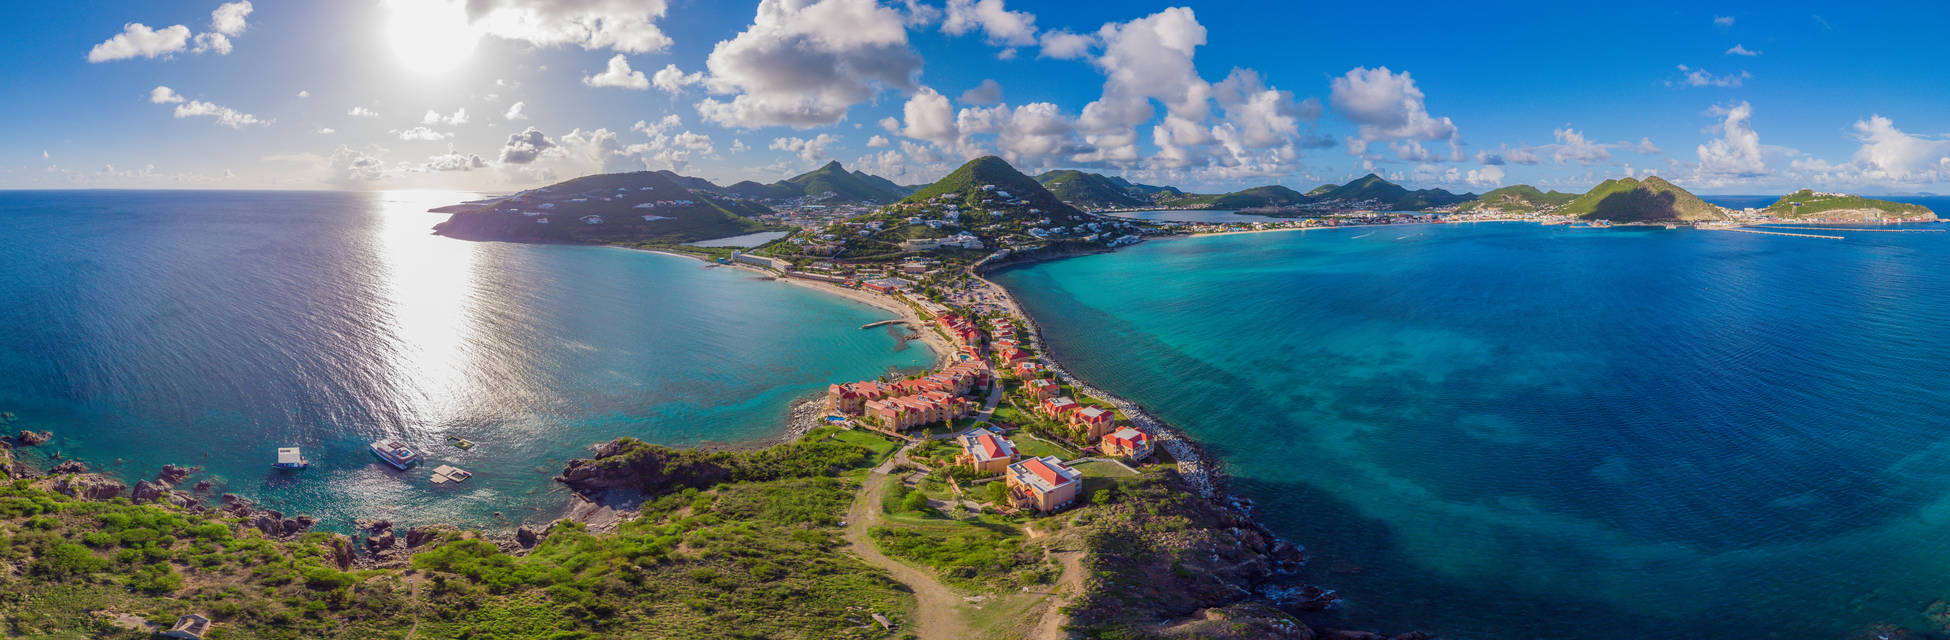 St-Maarten-Philipsburg-AdobeStock_370086736.jpg